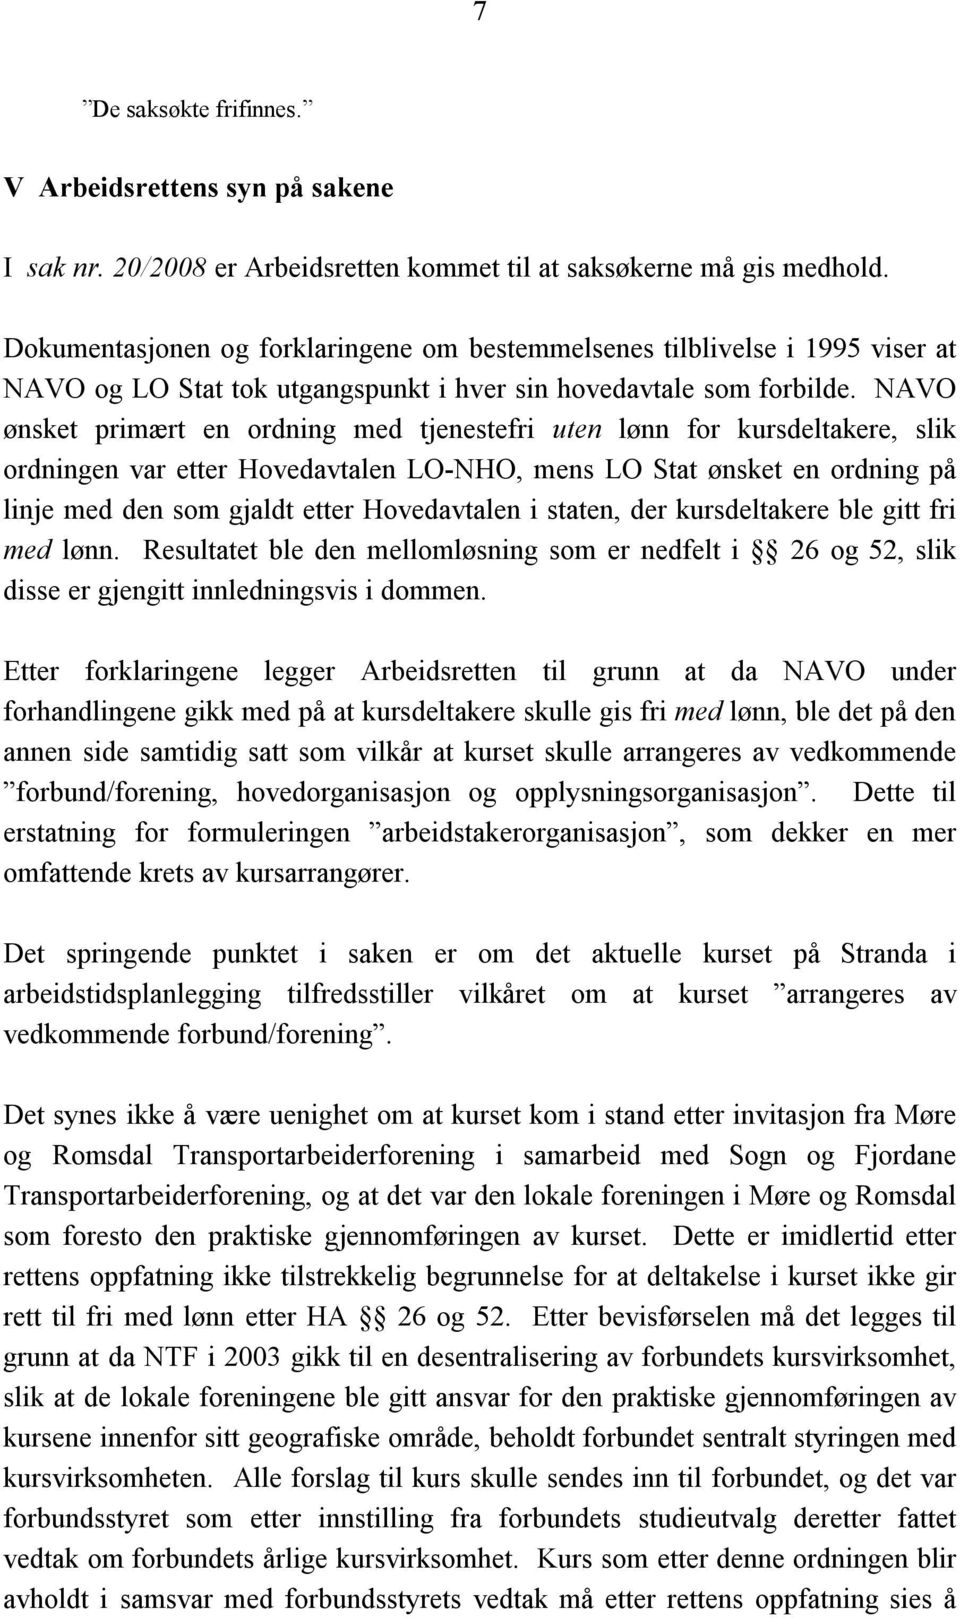 NAVO ønsket primært en ordning med tjenestefri uten lønn for kursdeltakere, slik ordningen var etter Hovedavtalen LO-NHO, mens LO Stat ønsket en ordning på linje med den som gjaldt etter Hovedavtalen